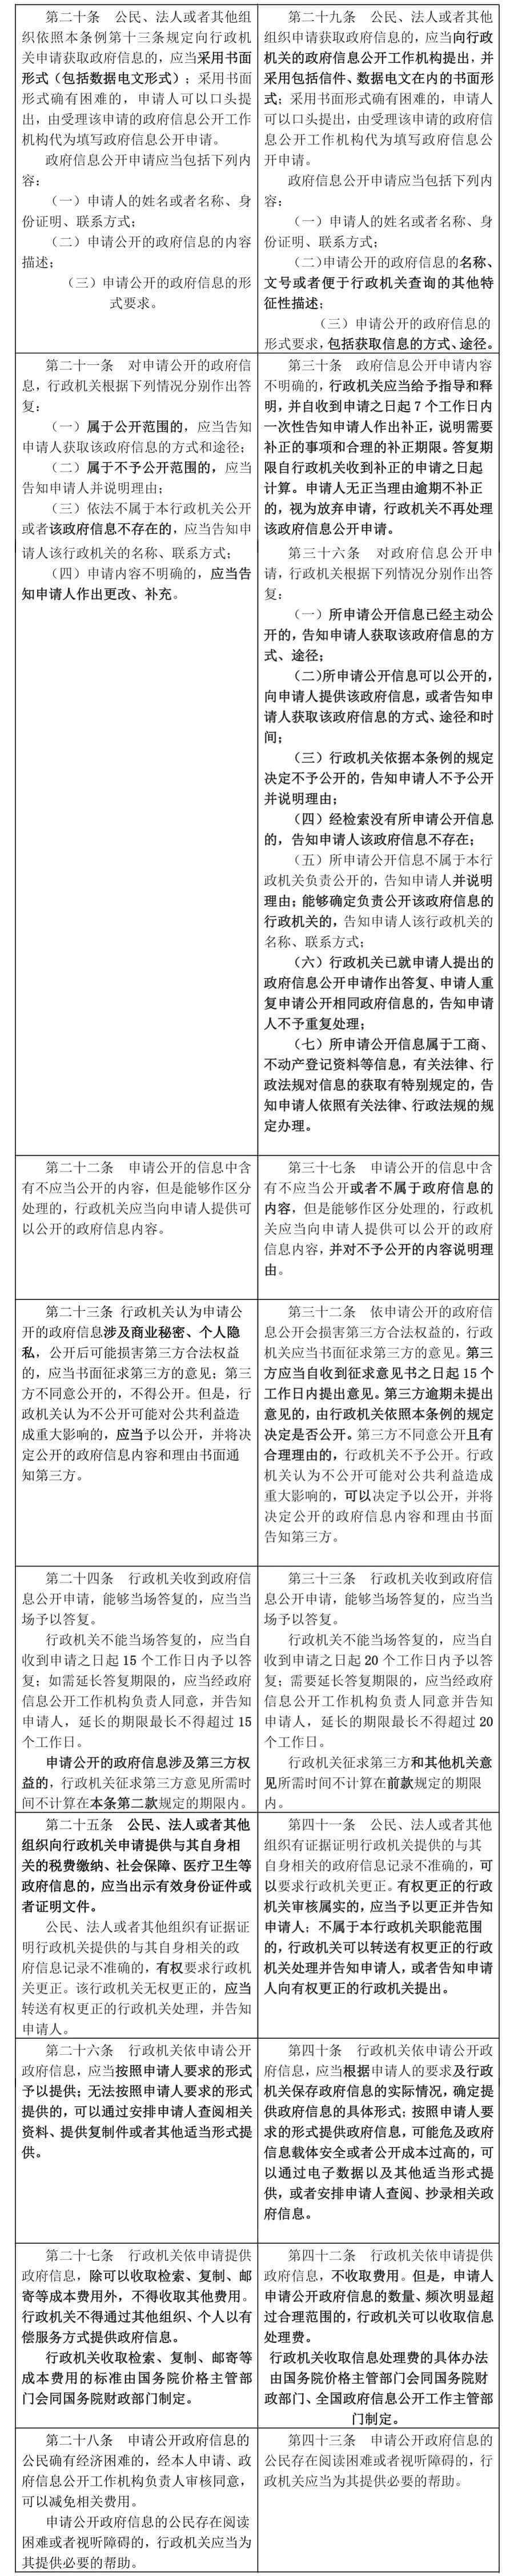 新《中华人民共和国政府信息公开条例》将于2019年5月15日起施行（附新旧条文比照）